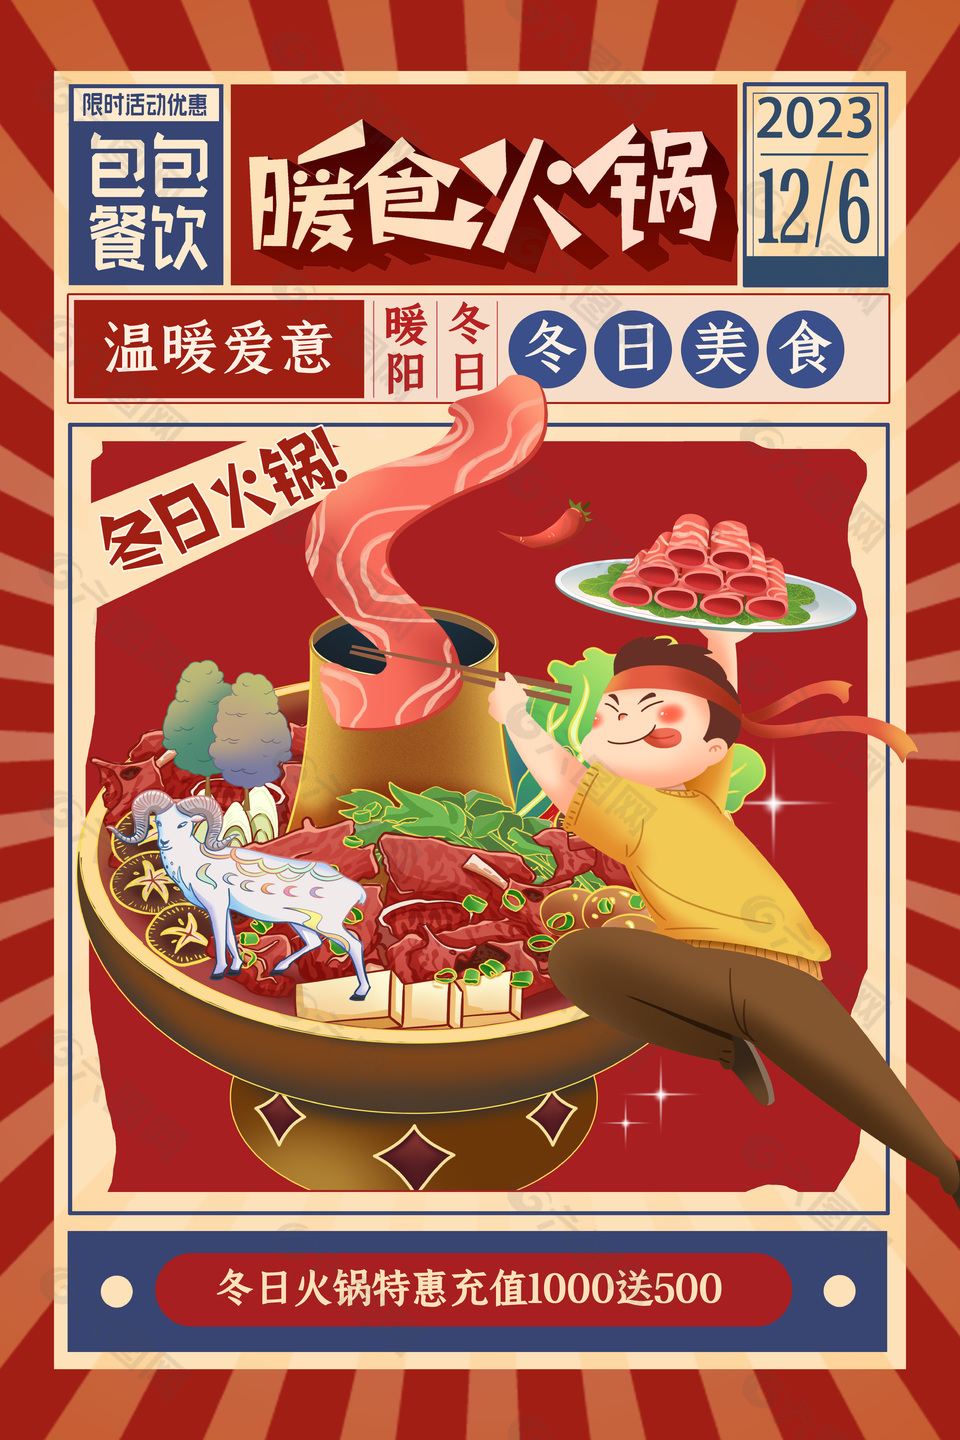 暖食火锅红色主题卡通插画素材下载